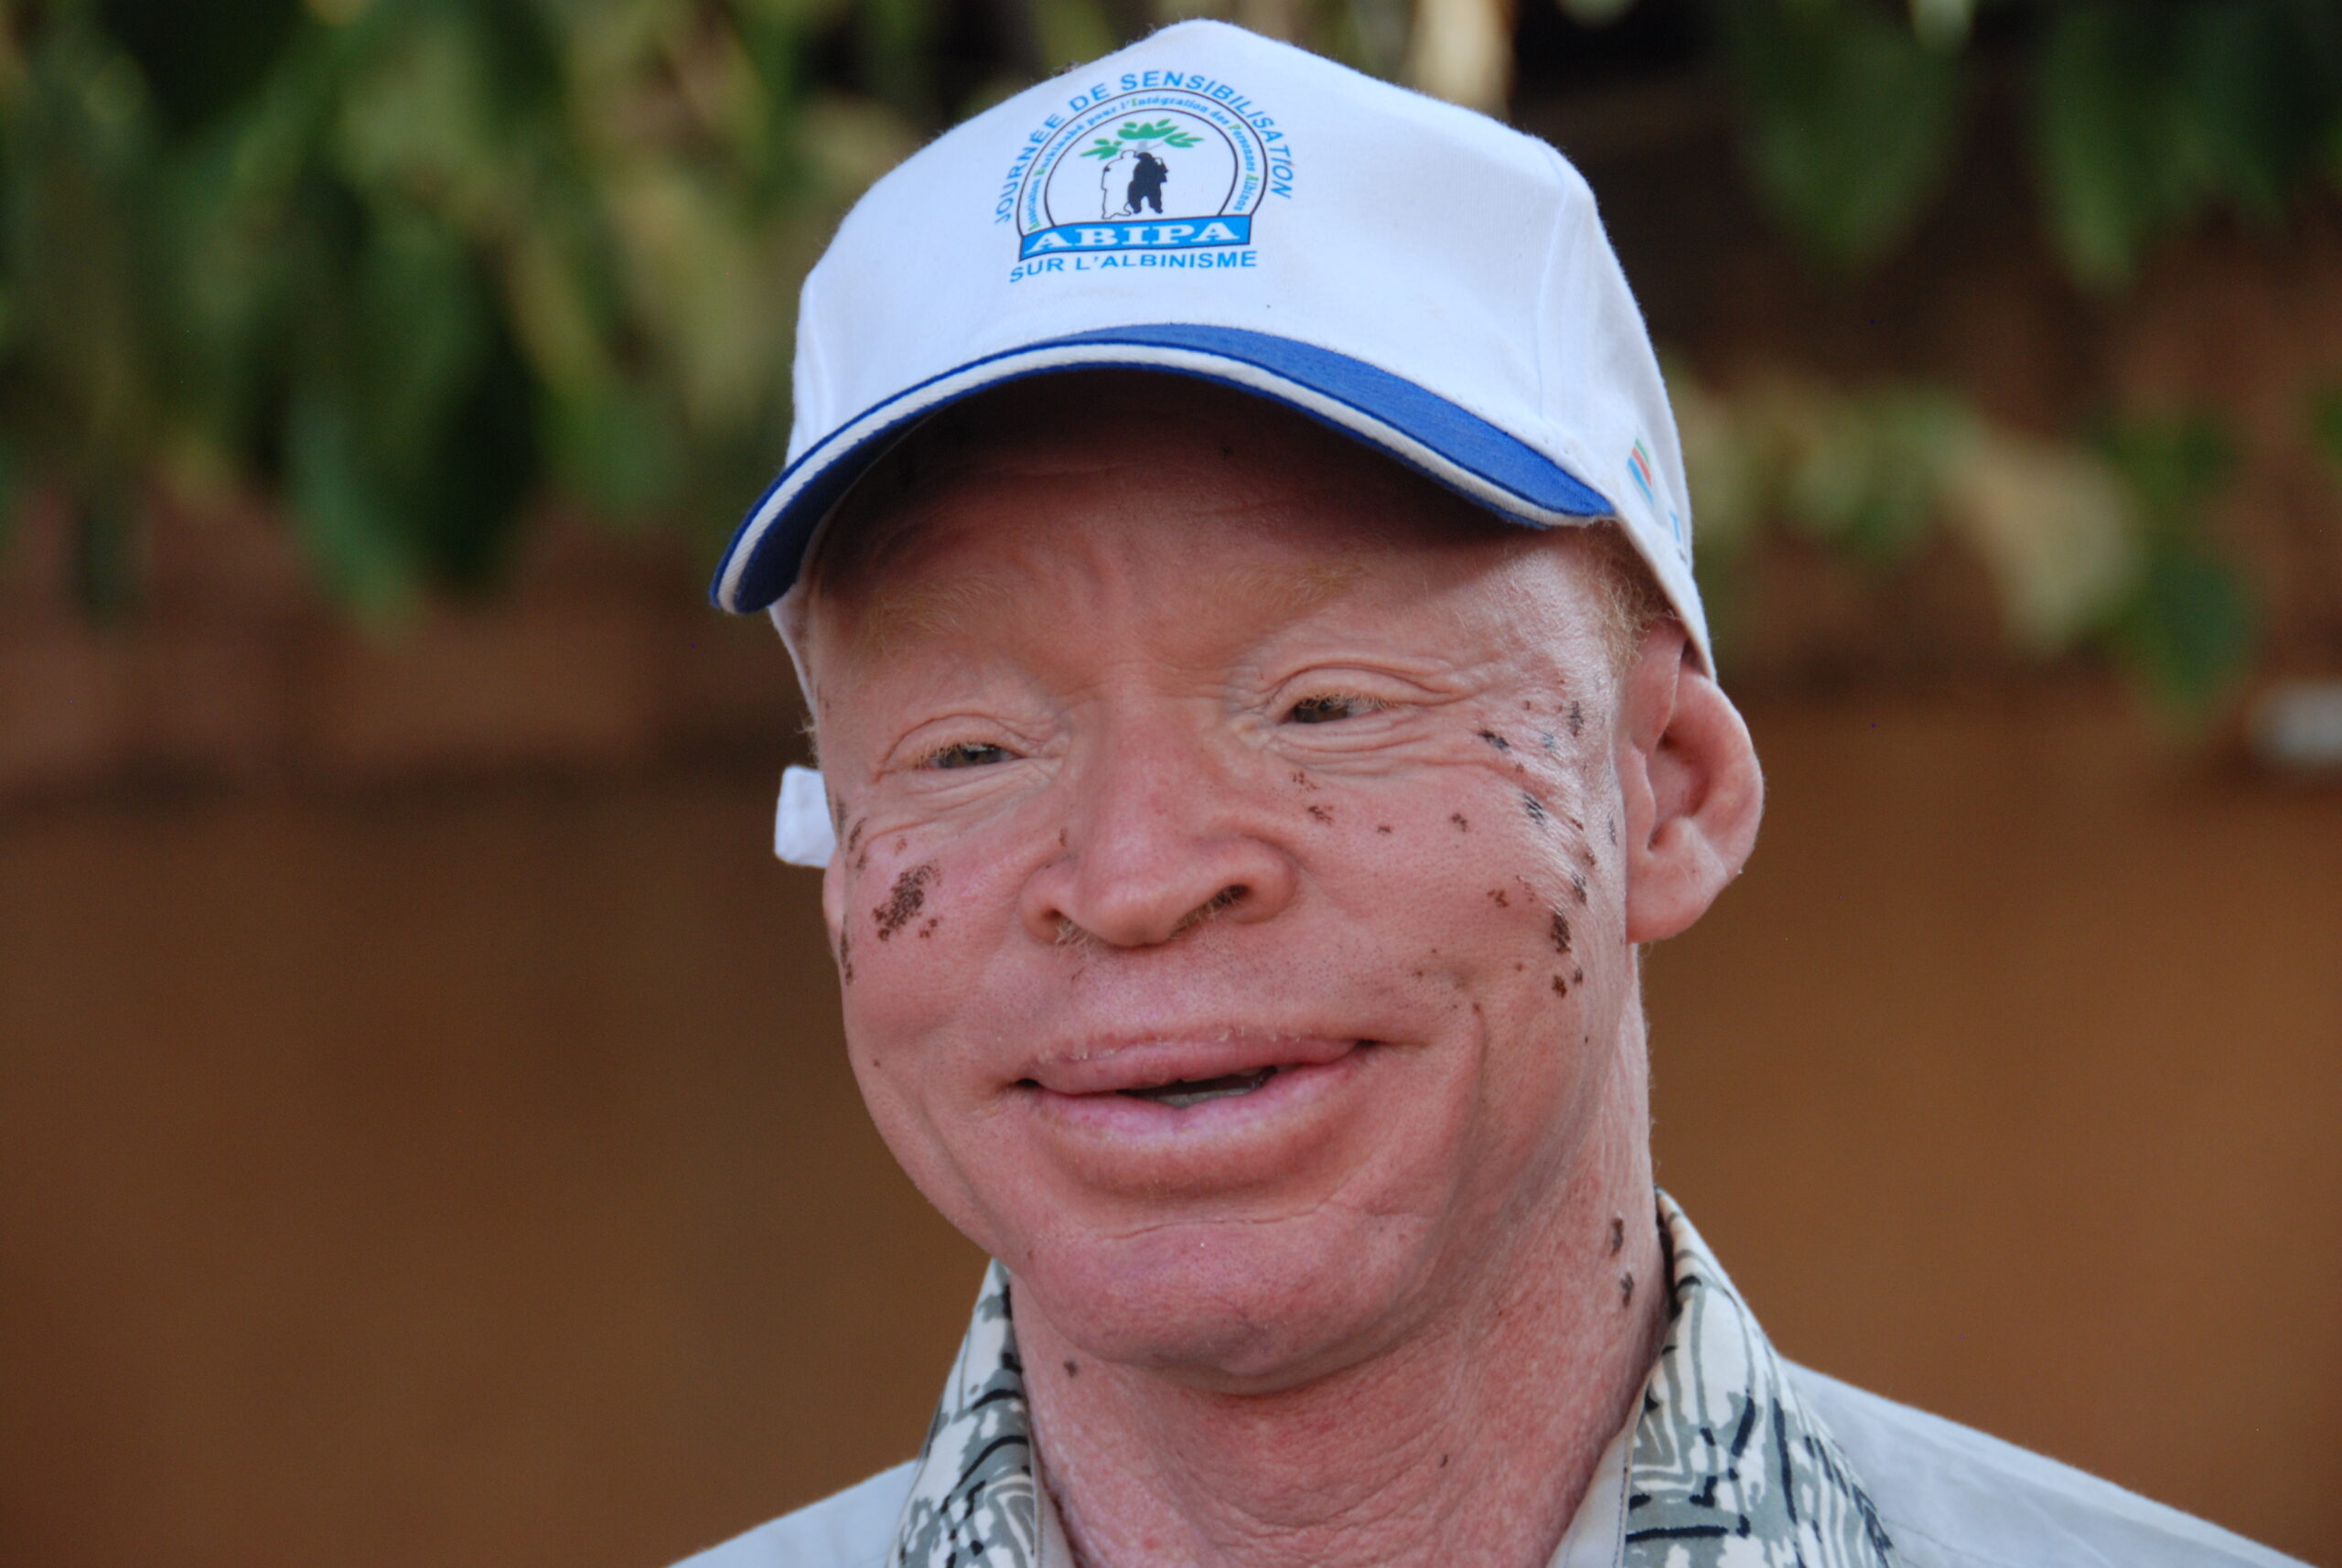 Fabere zet zich in voor andere mensen met albinisme